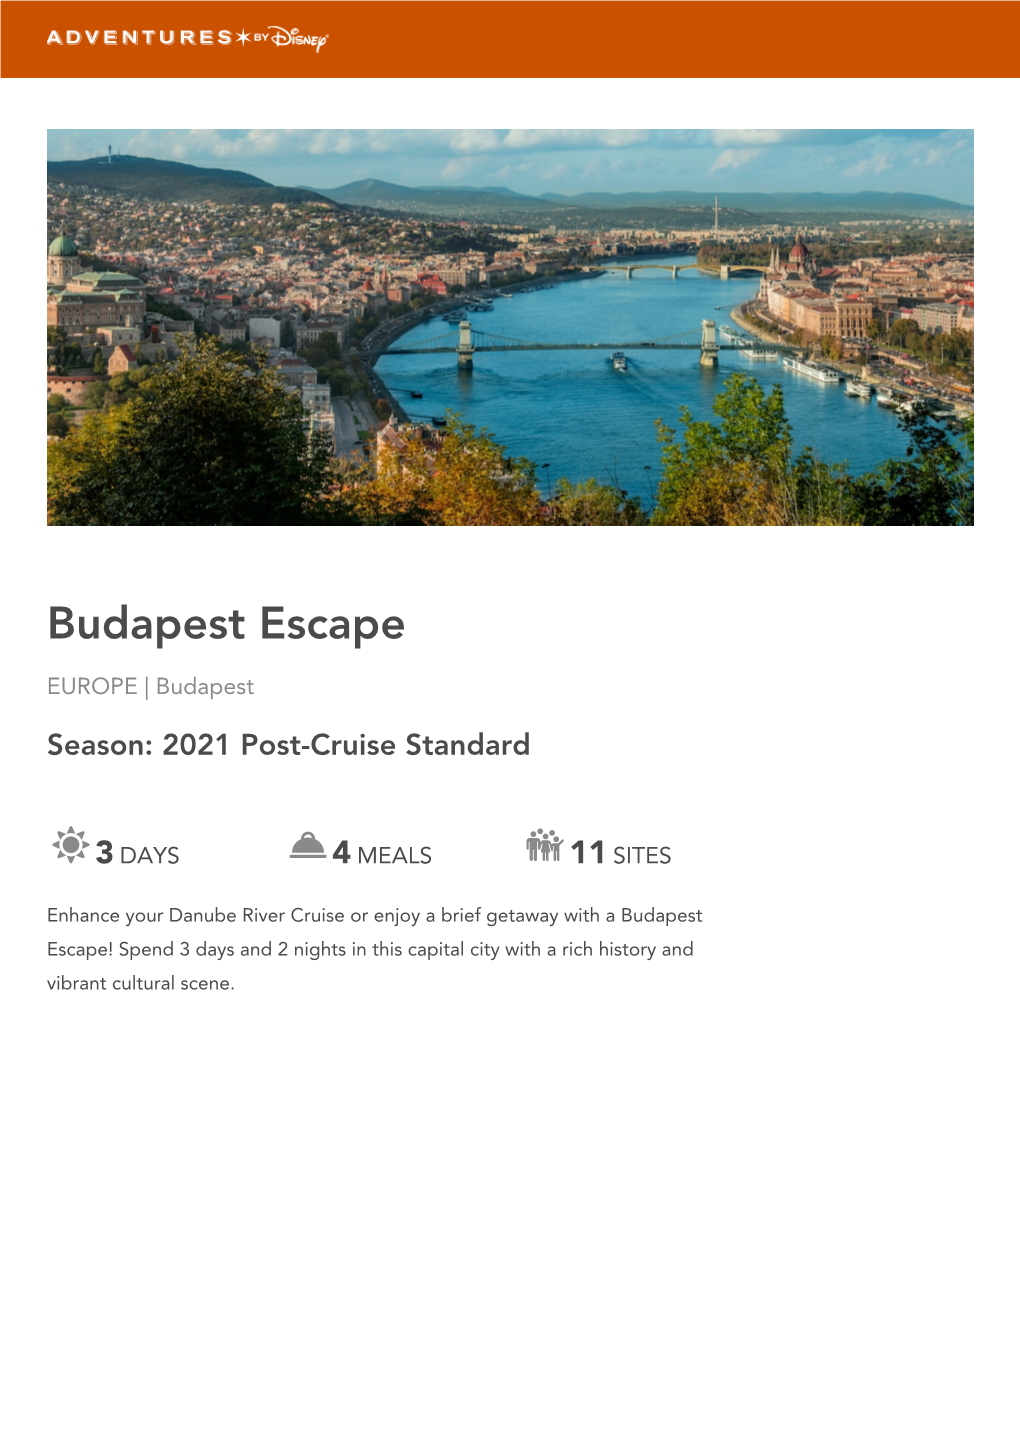 BUDAPEST ESCAPE Europe | Budapest